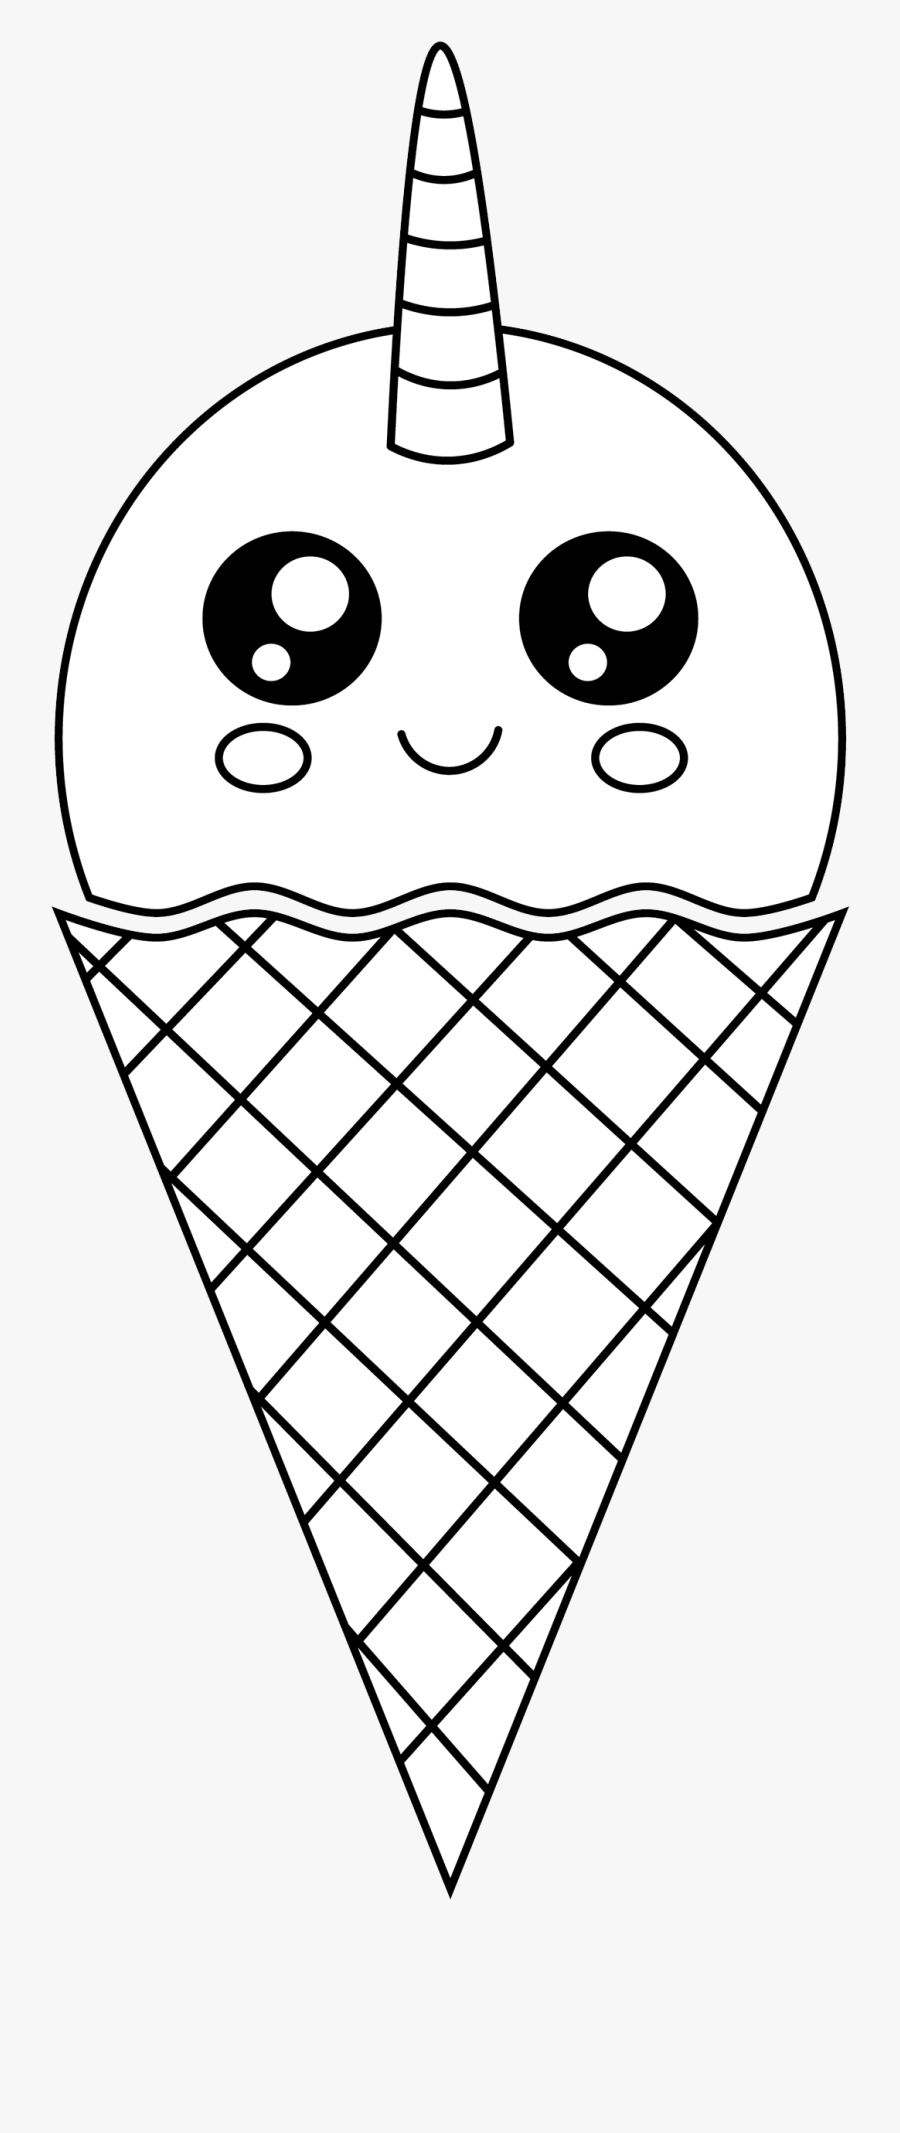 Free Cute Unicorn Ice Cream - Cute Pictures Of Ice Cream, Transparent Clipart